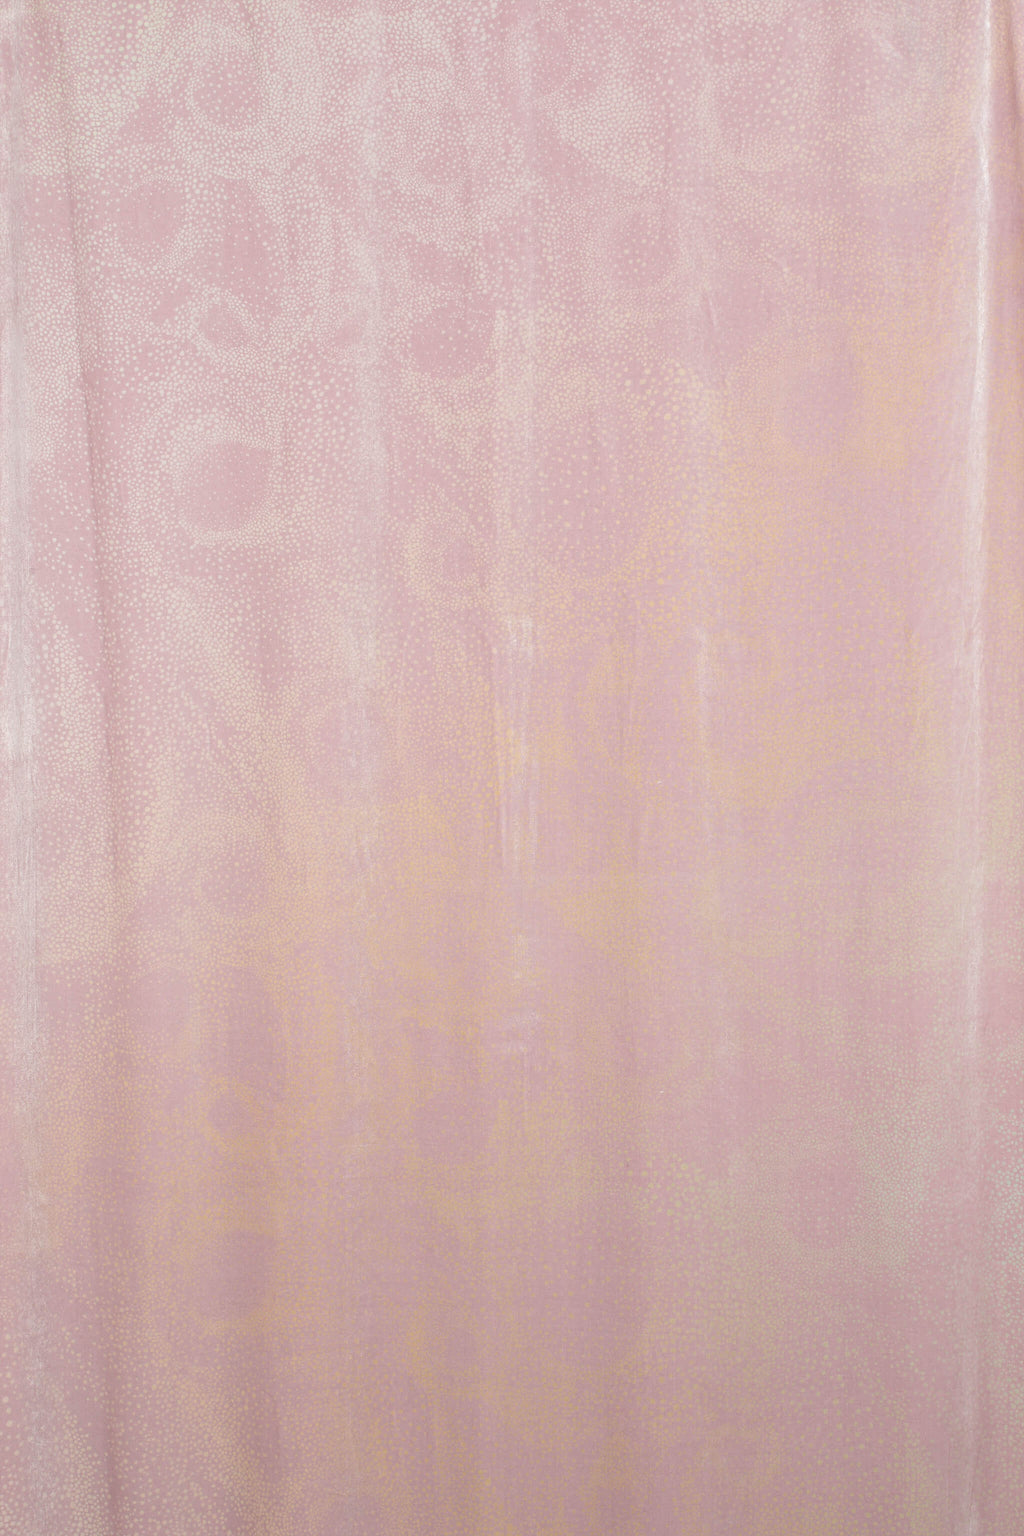 Aurora textile design dusty pink silk velvet fabric by GvE&Co (Georgina von Etzdorf and co)